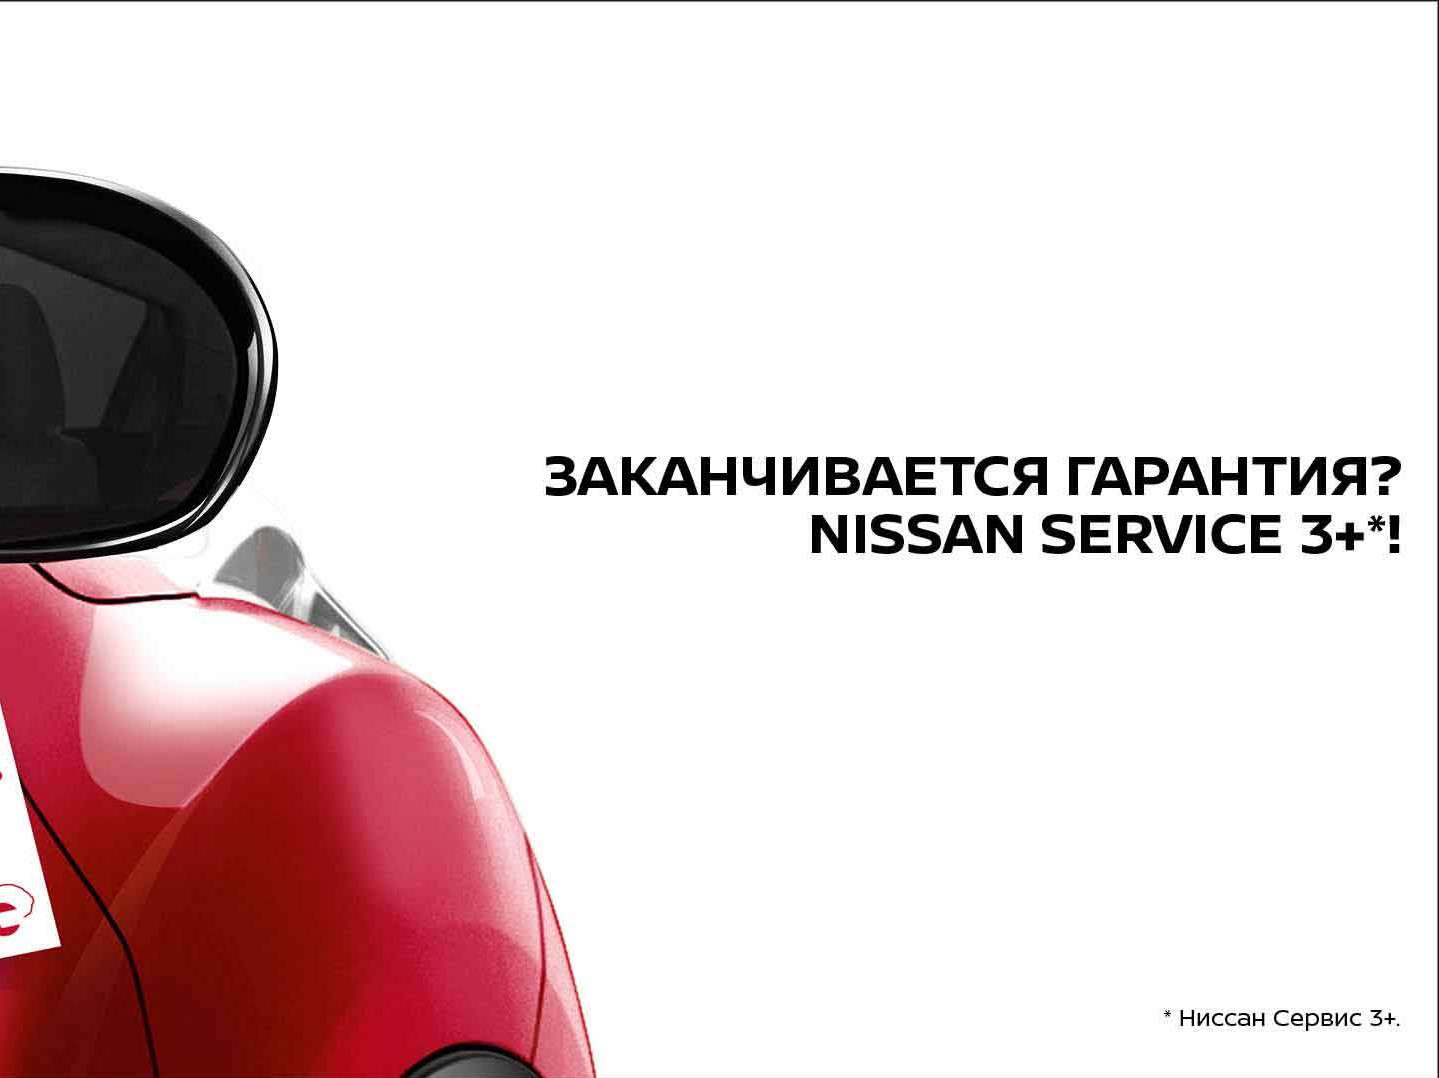 Taboola Ad Example 32160 - С Nissan надежно! С подробностями Программы ознакомьтесь на официальном сайте